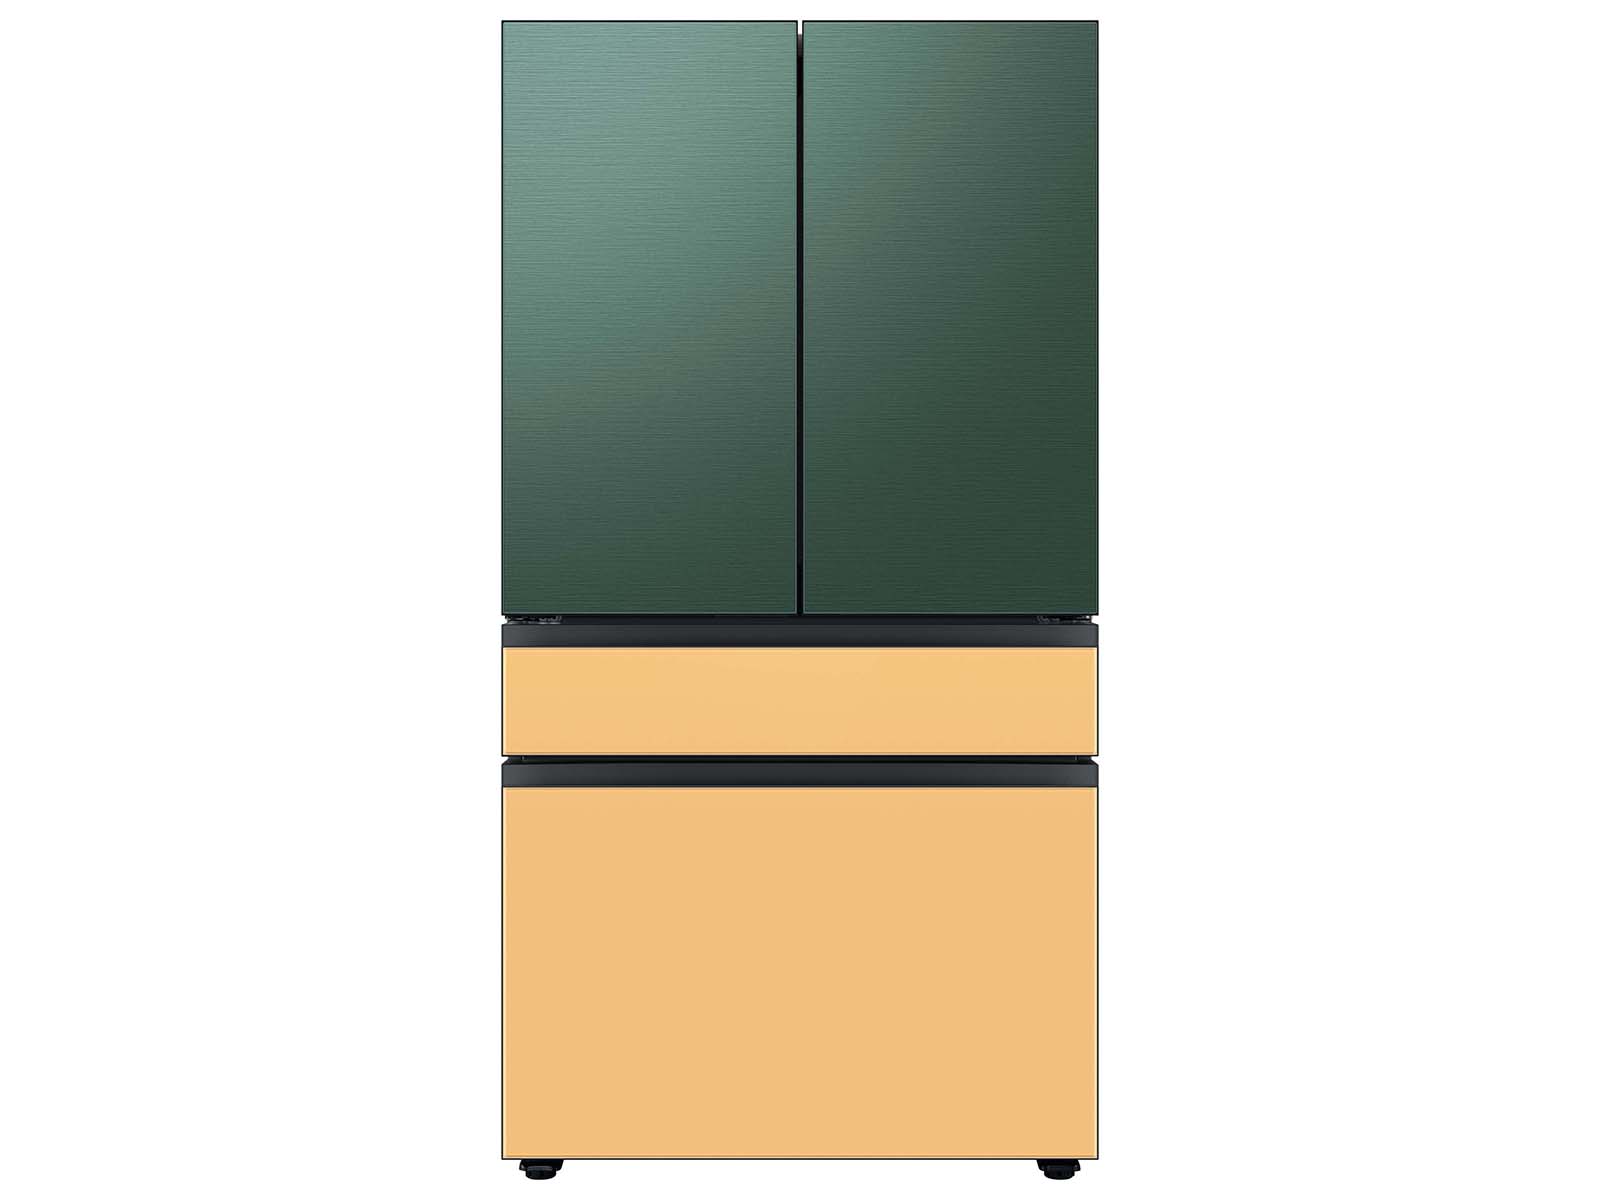 Thumbnail image of Bespoke 4-Door French Door Refrigerator Panel in Emerald Green Steel - Top Panel